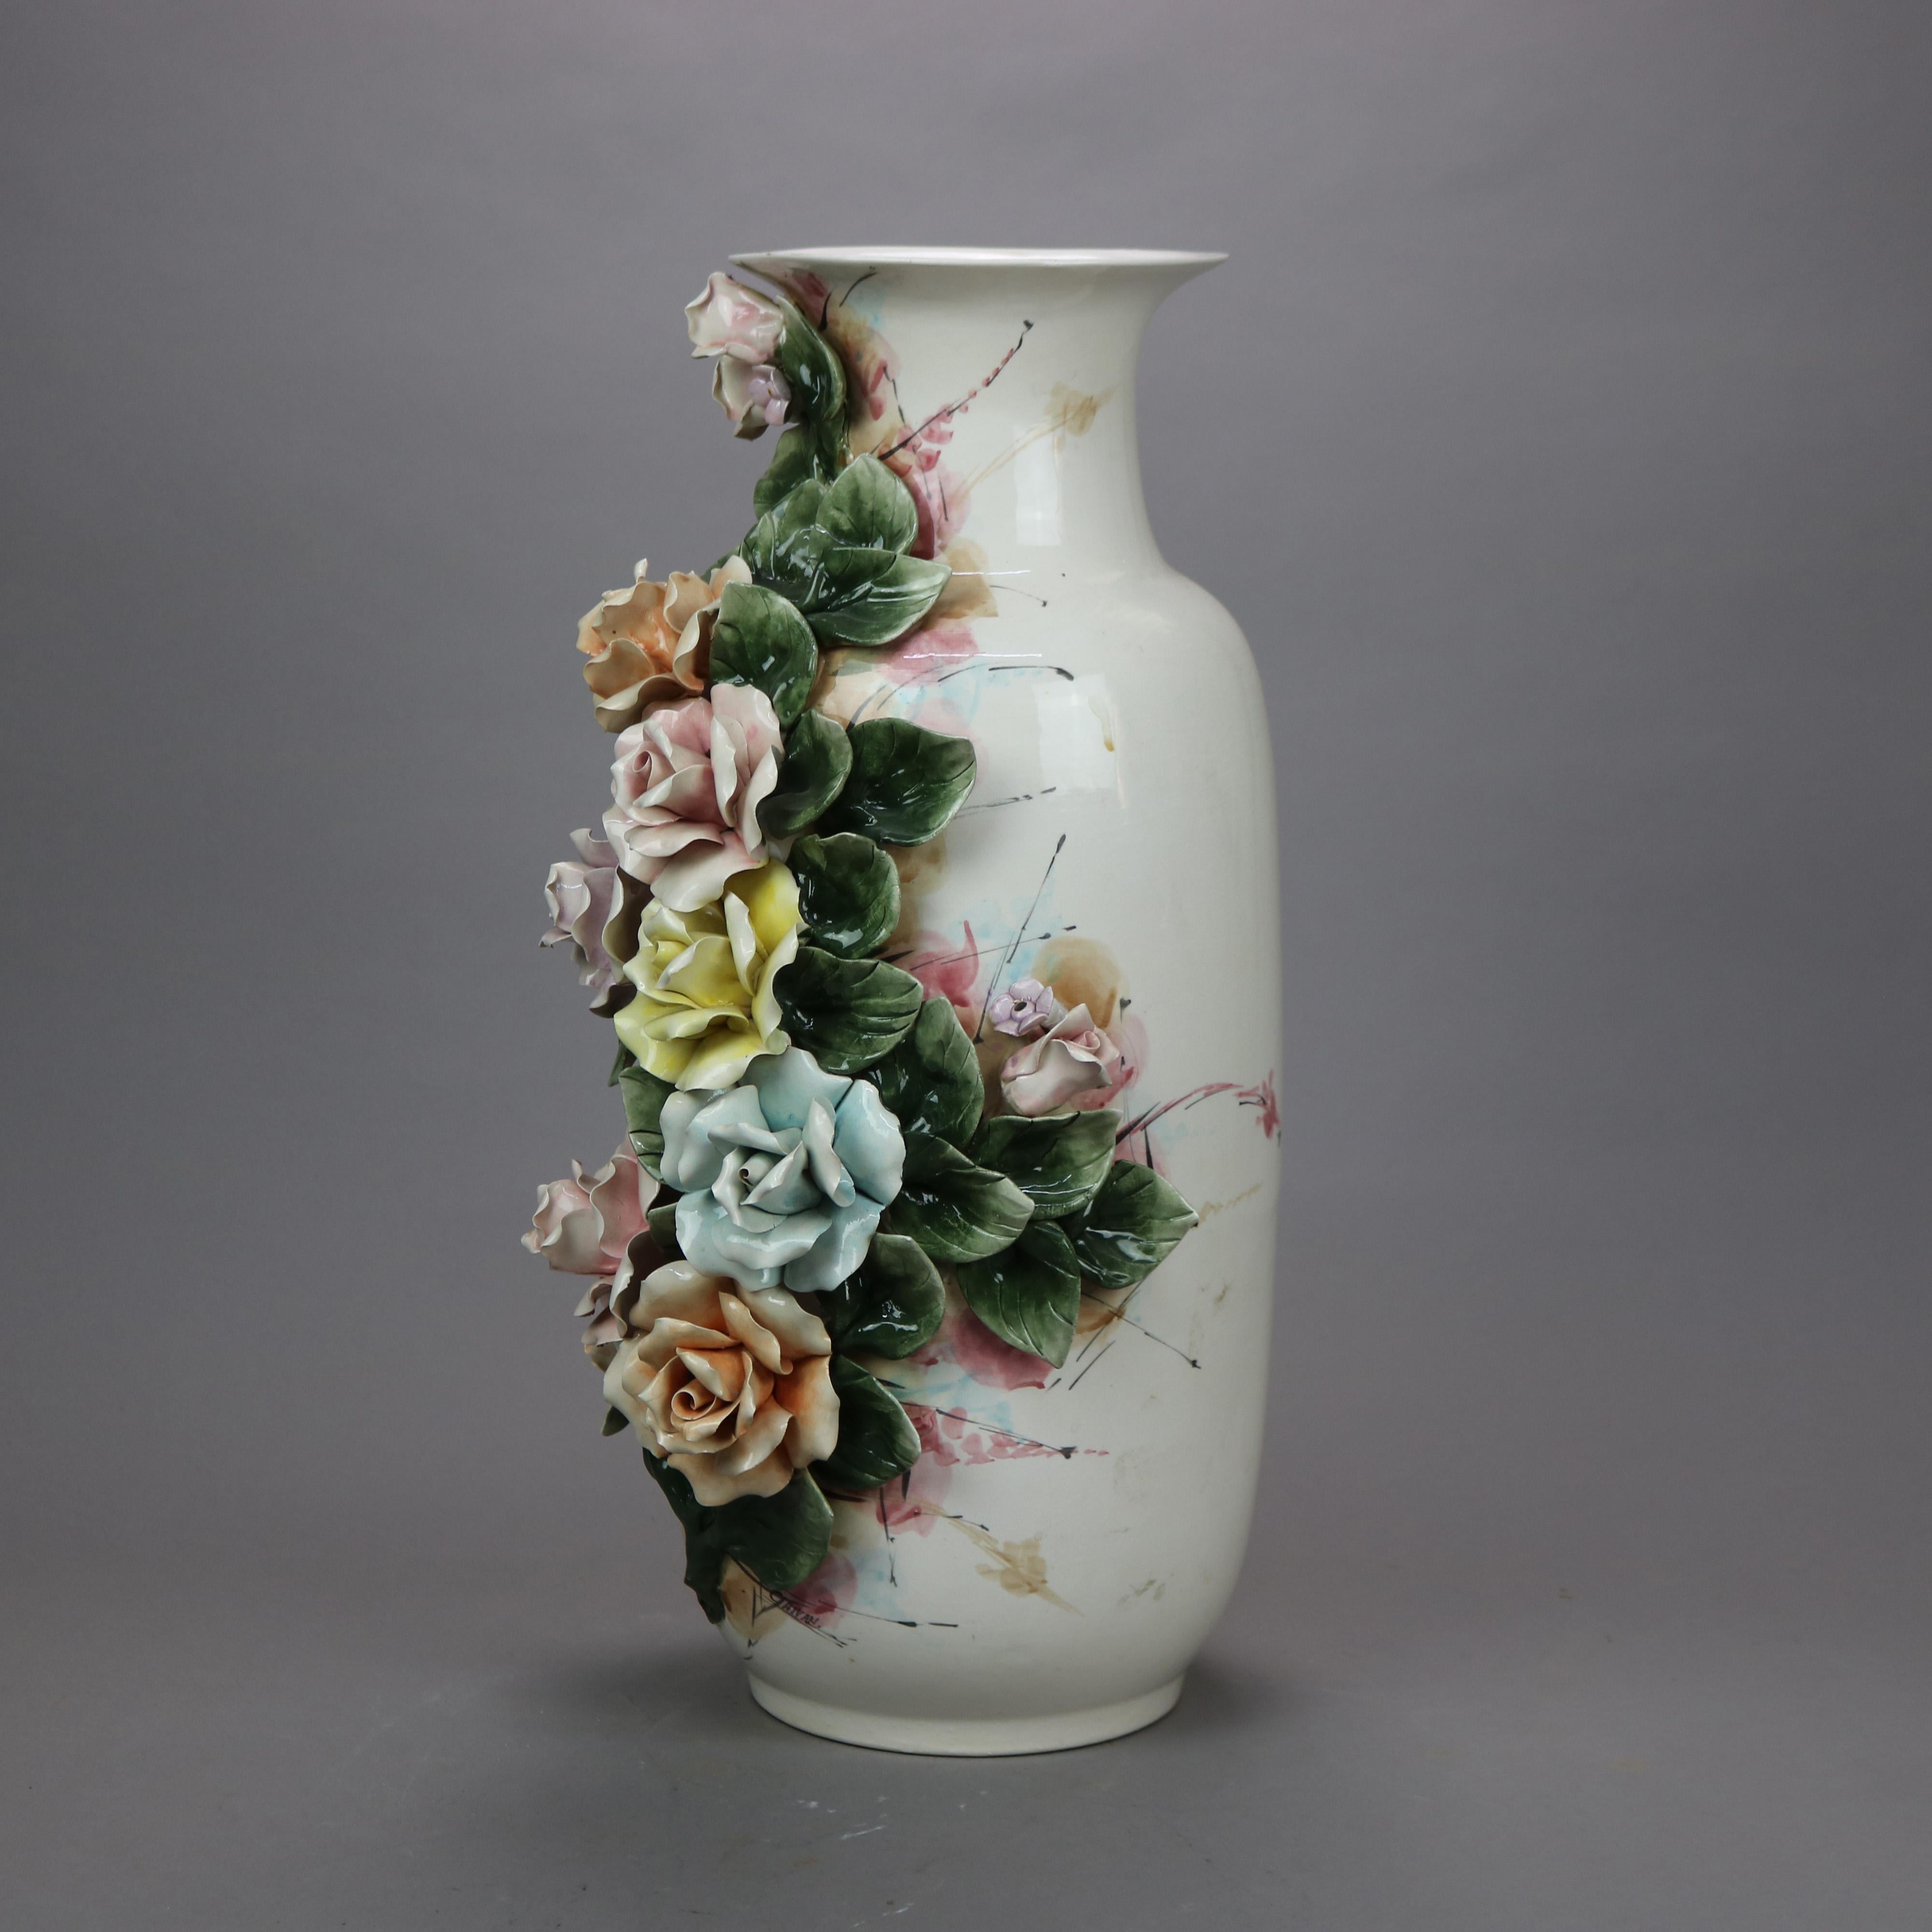 Un vase de sol italien ancien de Capodimonte offre une construction en poterie avec des roses appliquées, signé comme photographié, c1900.

Mesures- 22.25''H x 10''W x 11''D.

Note sur le catalogue : Demandez les TARIFS DE LIVRAISON RÉDUITS